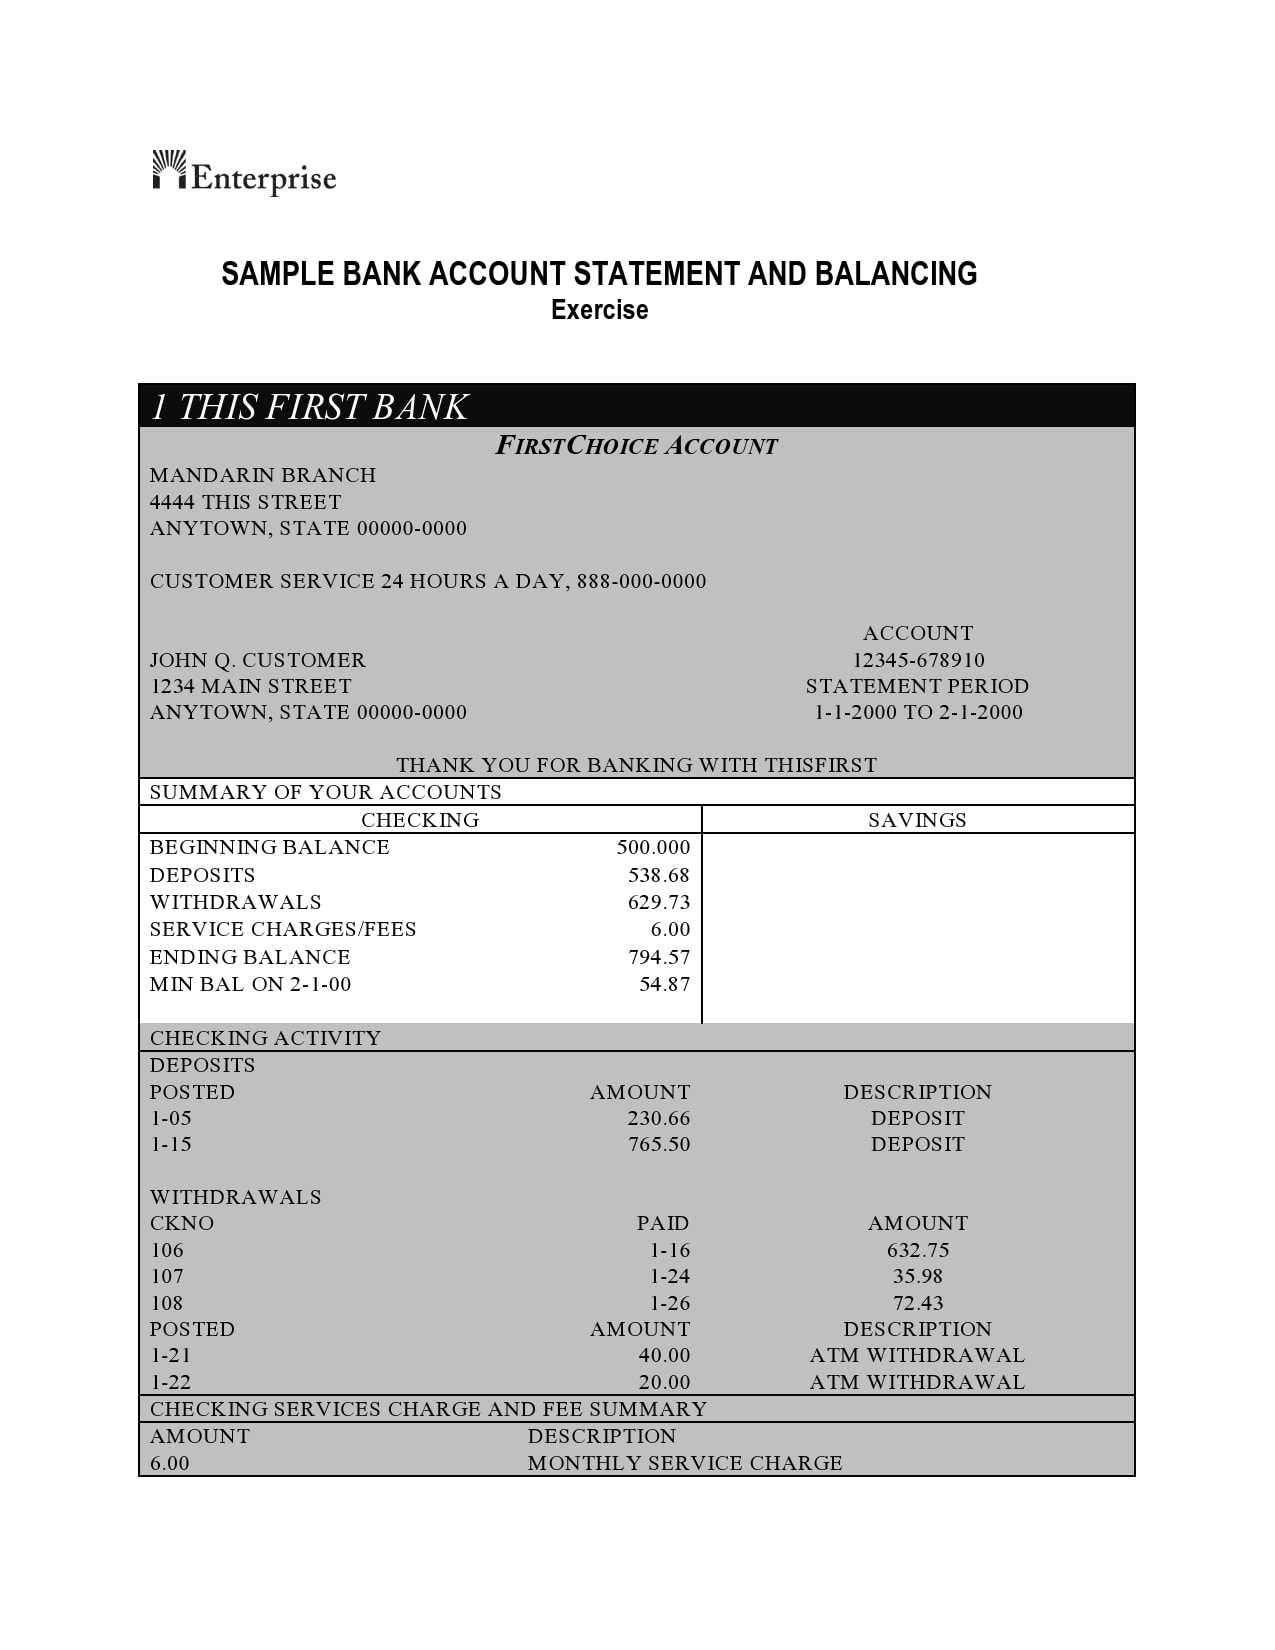 3 months of fake bank statements pdf free